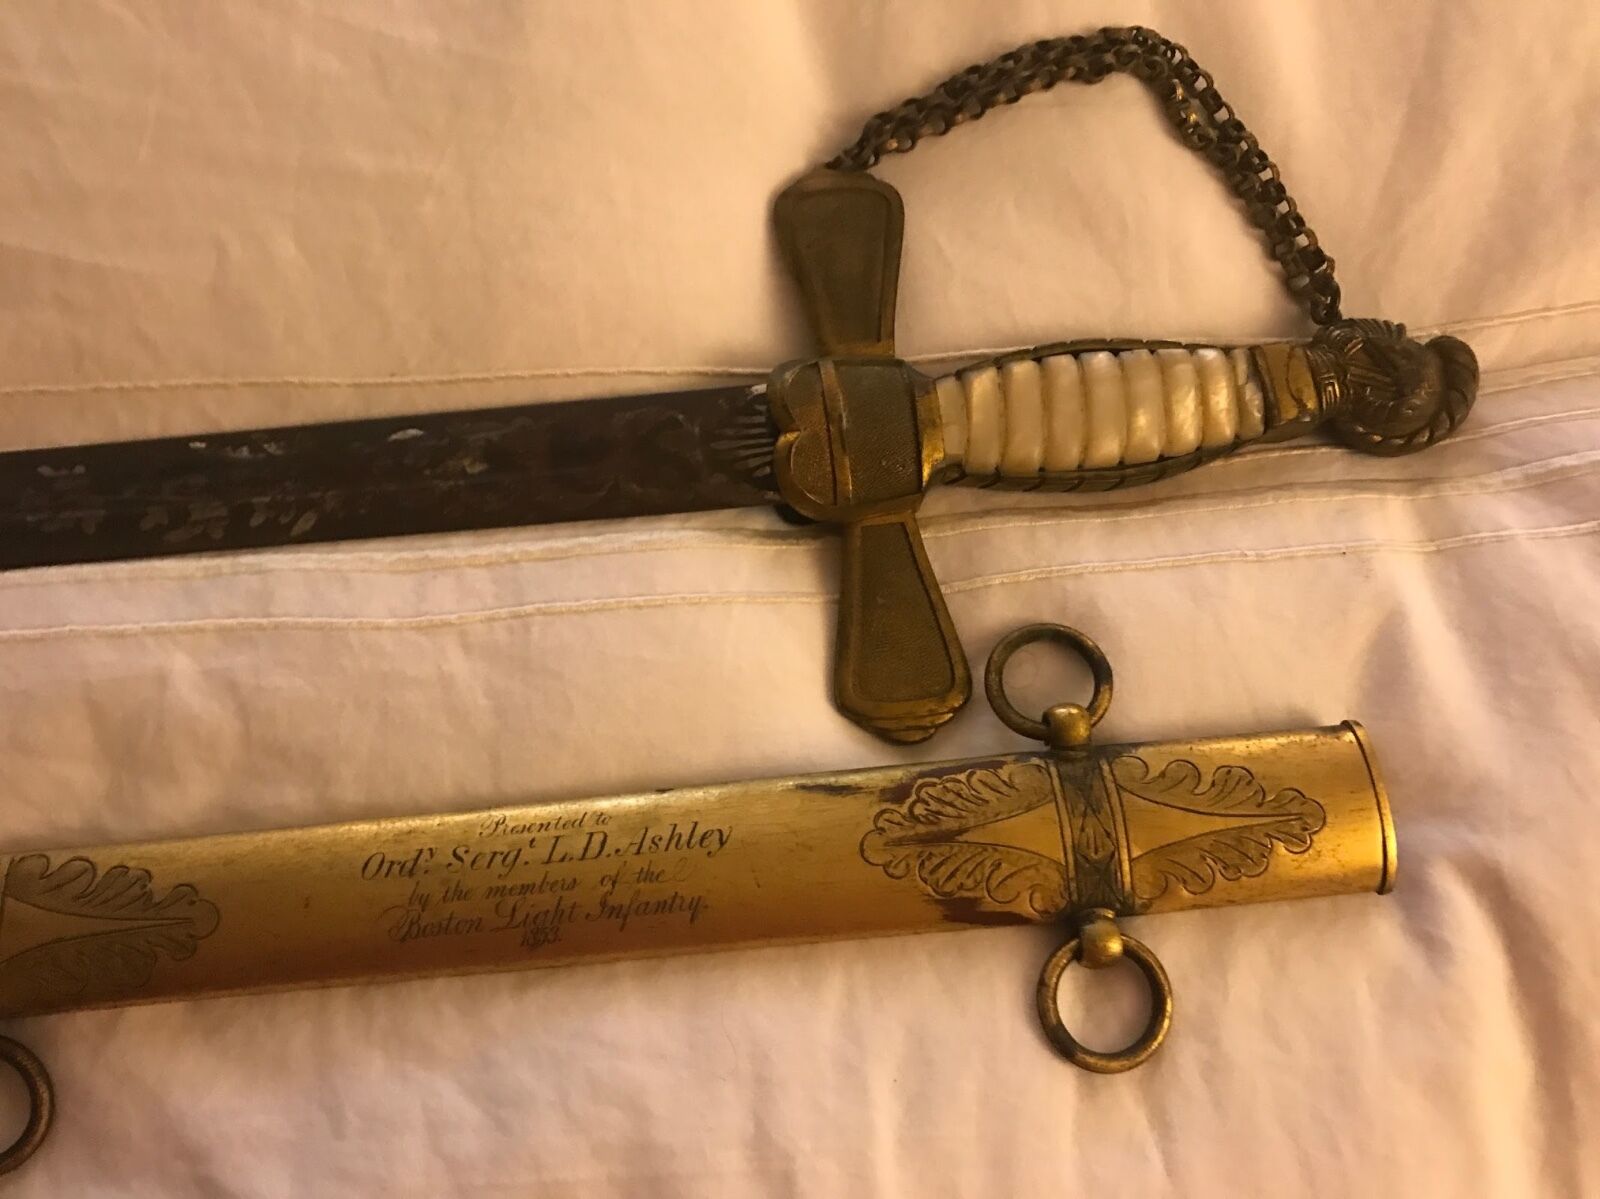 Antique Ceremonial Sword gift to Sgt Luke D. Ashley - Boston Light Infantry 1853